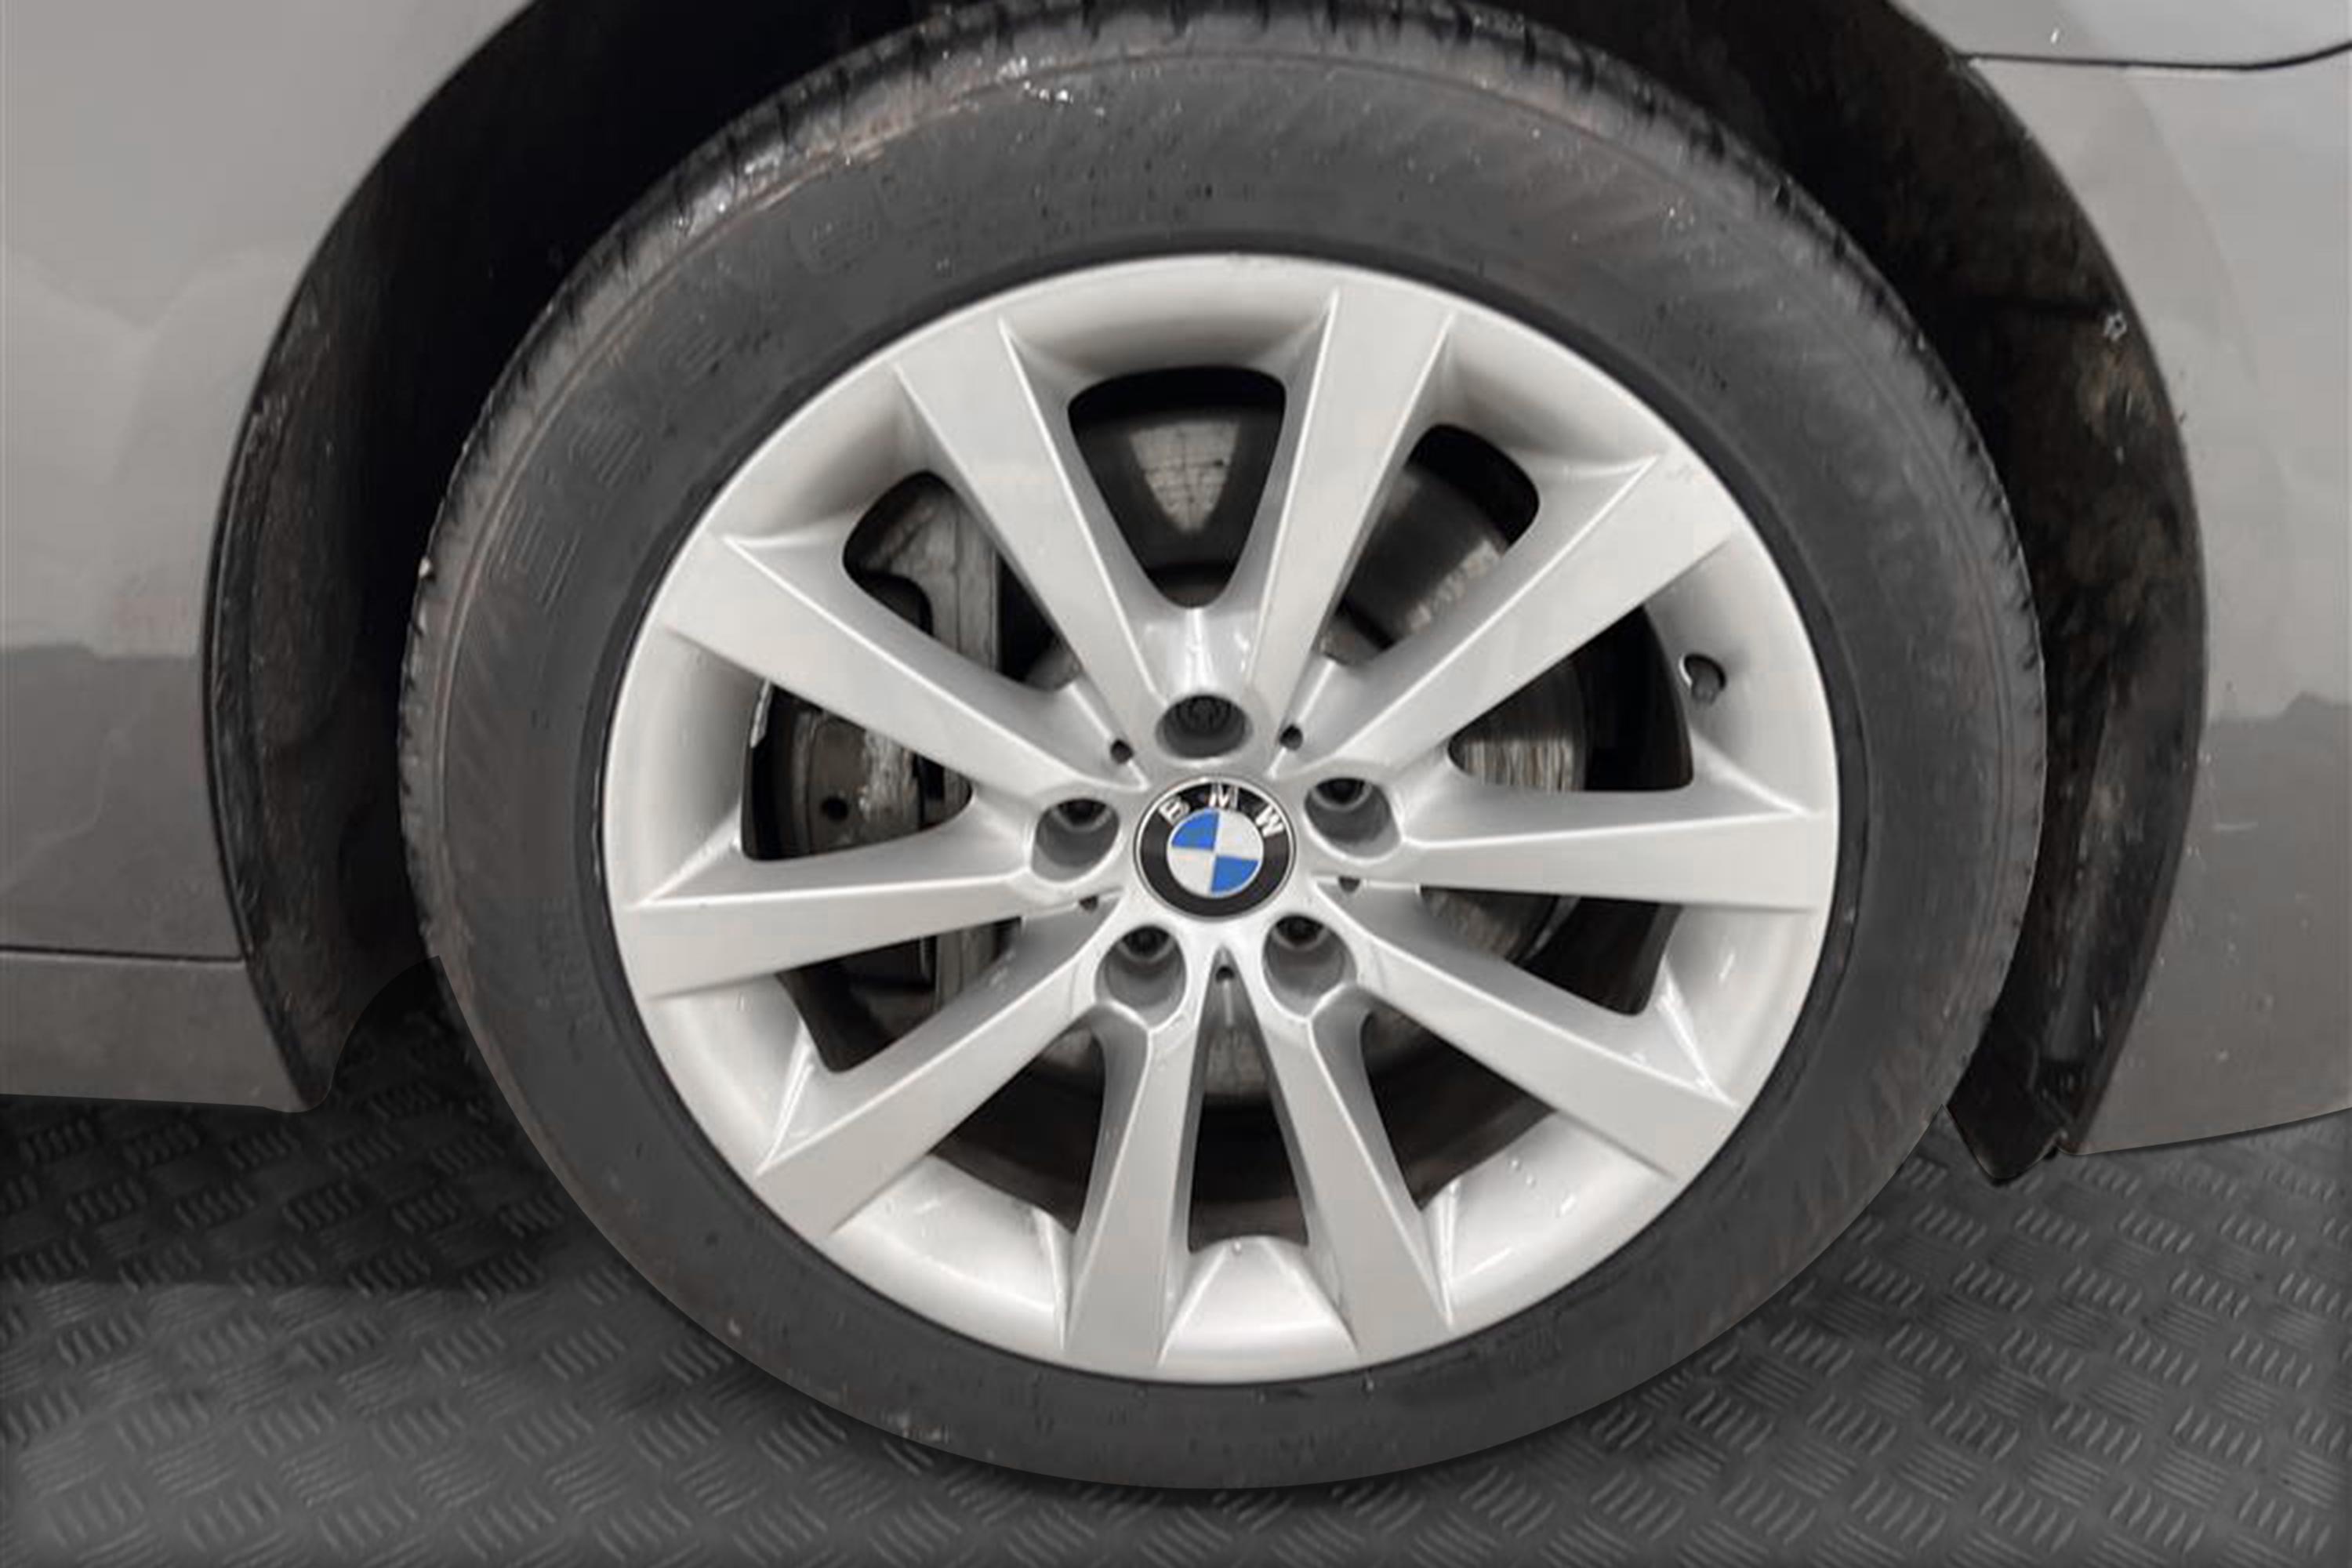 BMW 530d xDrive 258hk HuD Navigation Drag 0,59l/100kminteriör